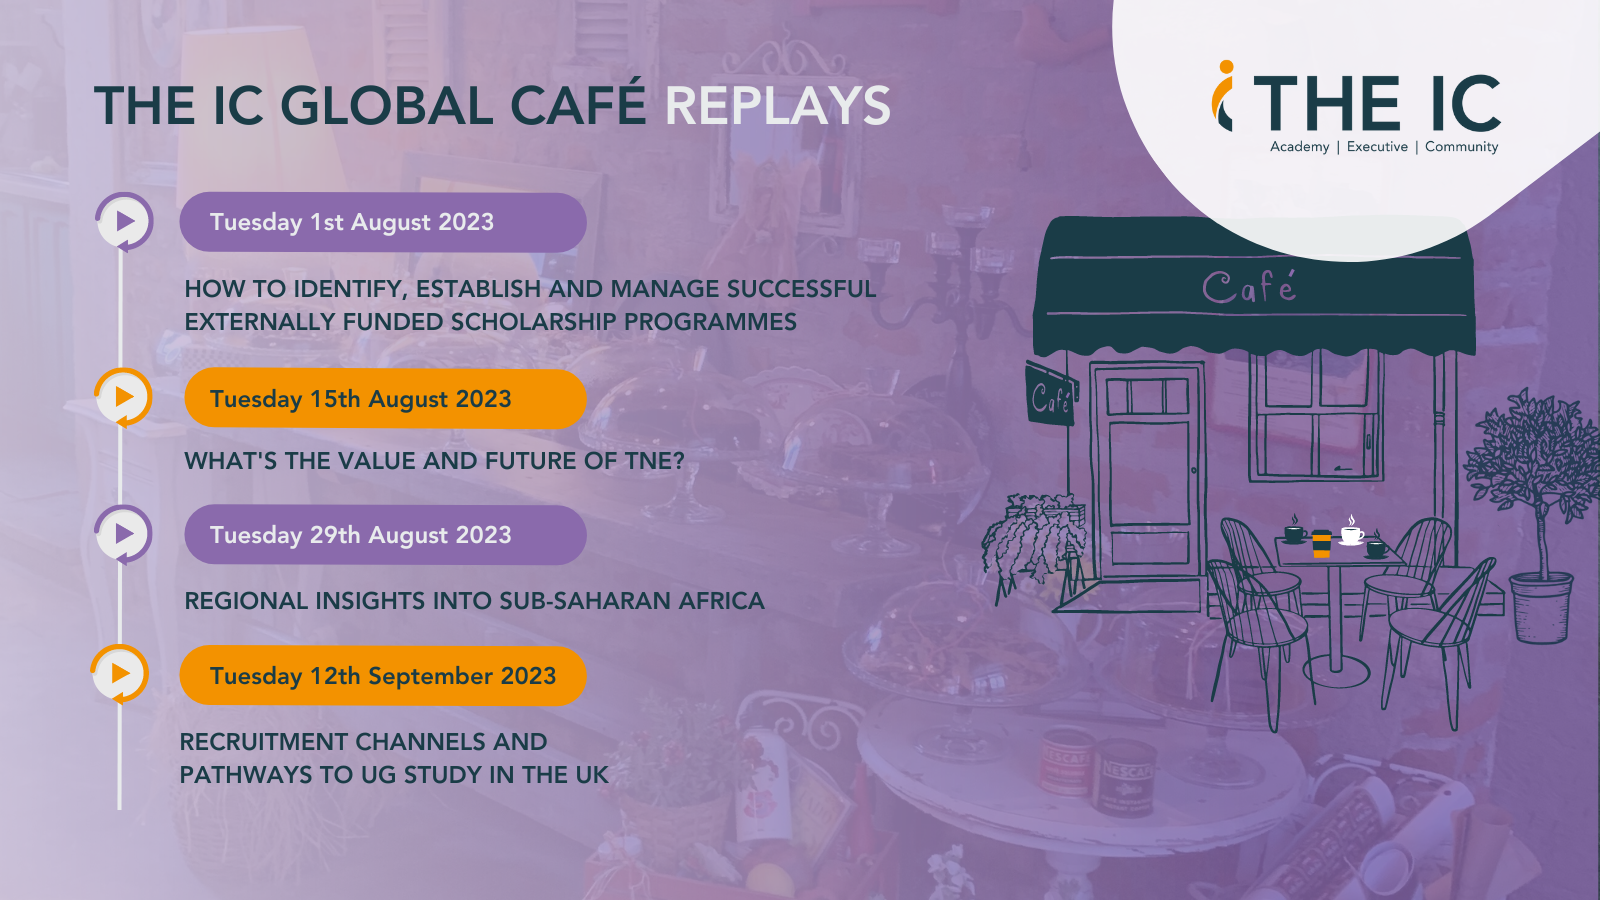 The IC Global Café replays